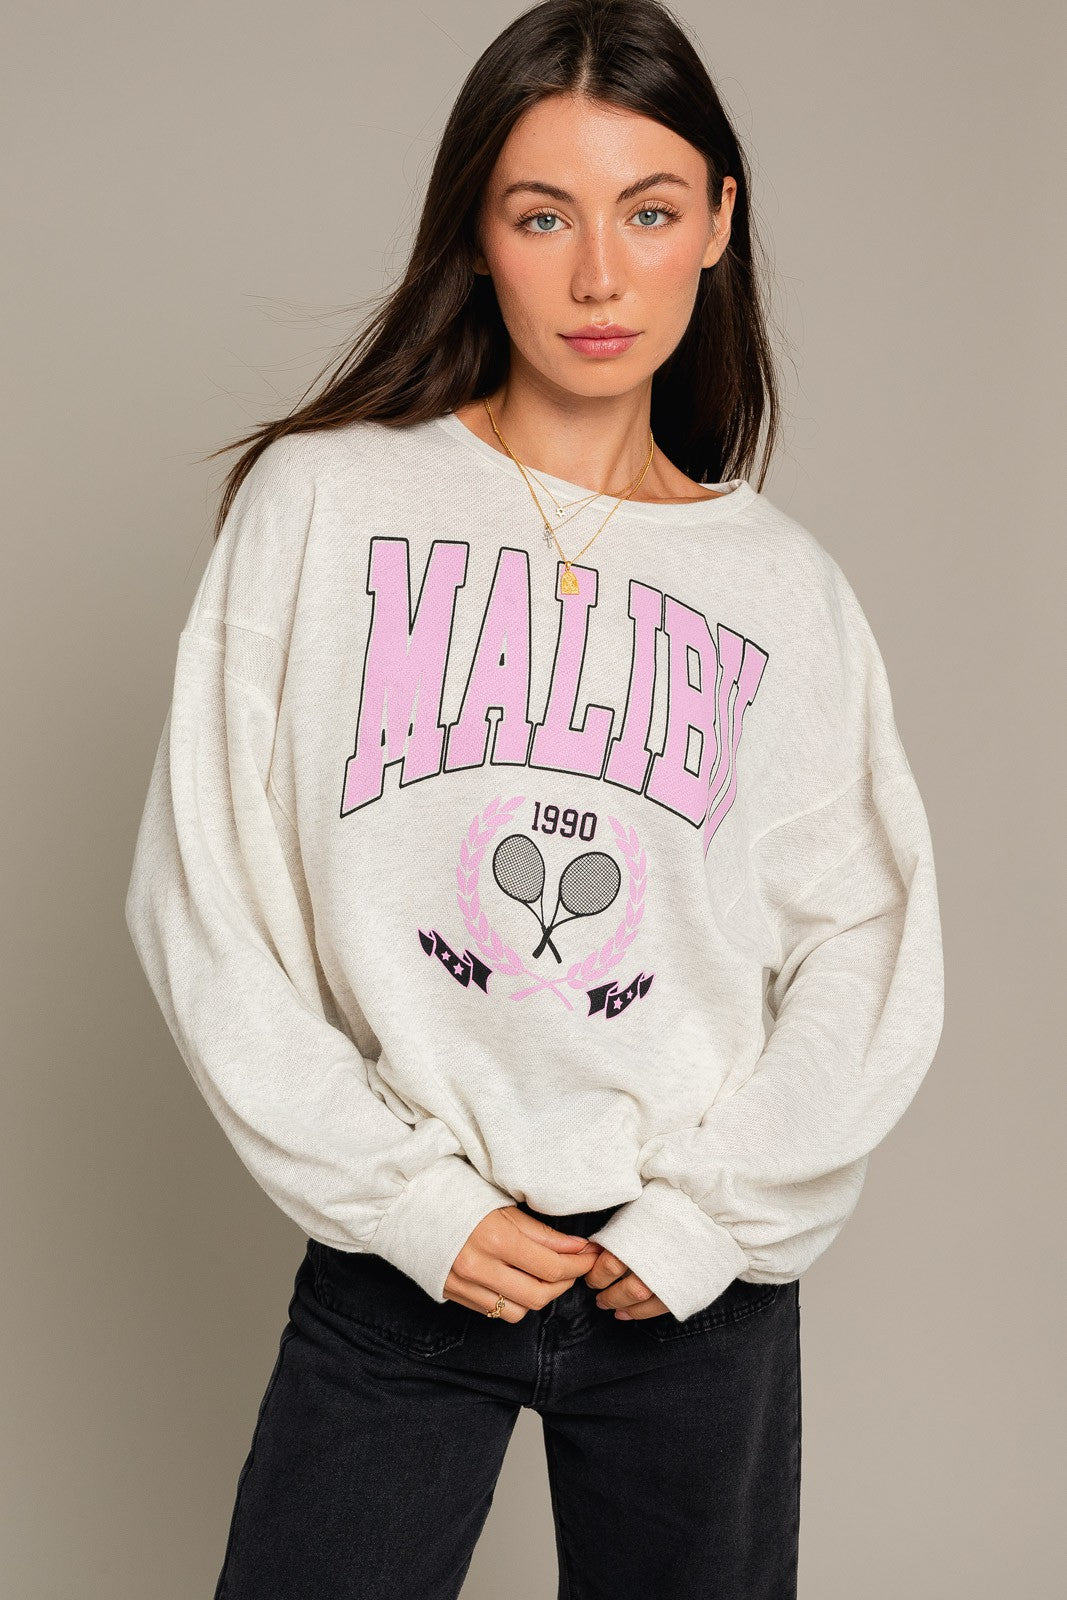 Malibu 1990 Pullover